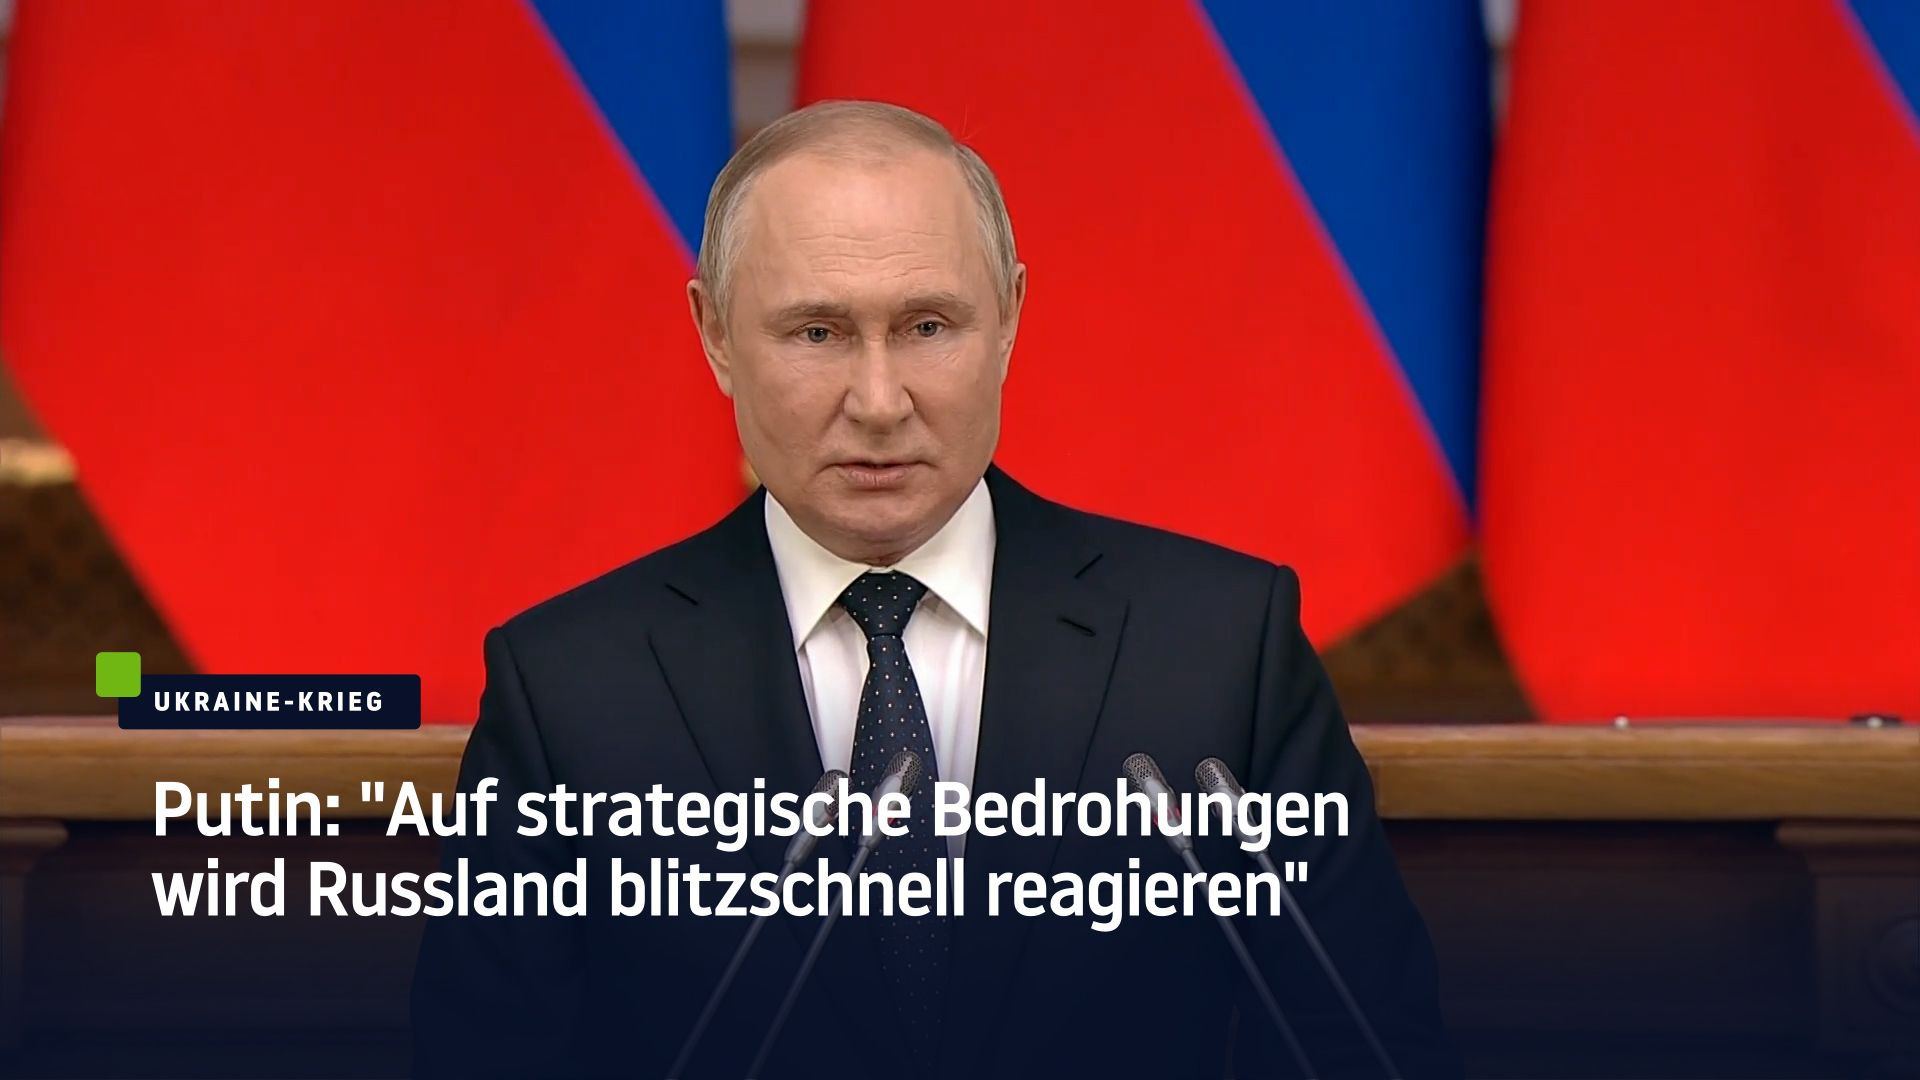 Putin: "Auf strategische Bedrohungen wird Russland blitzschnell reagieren"